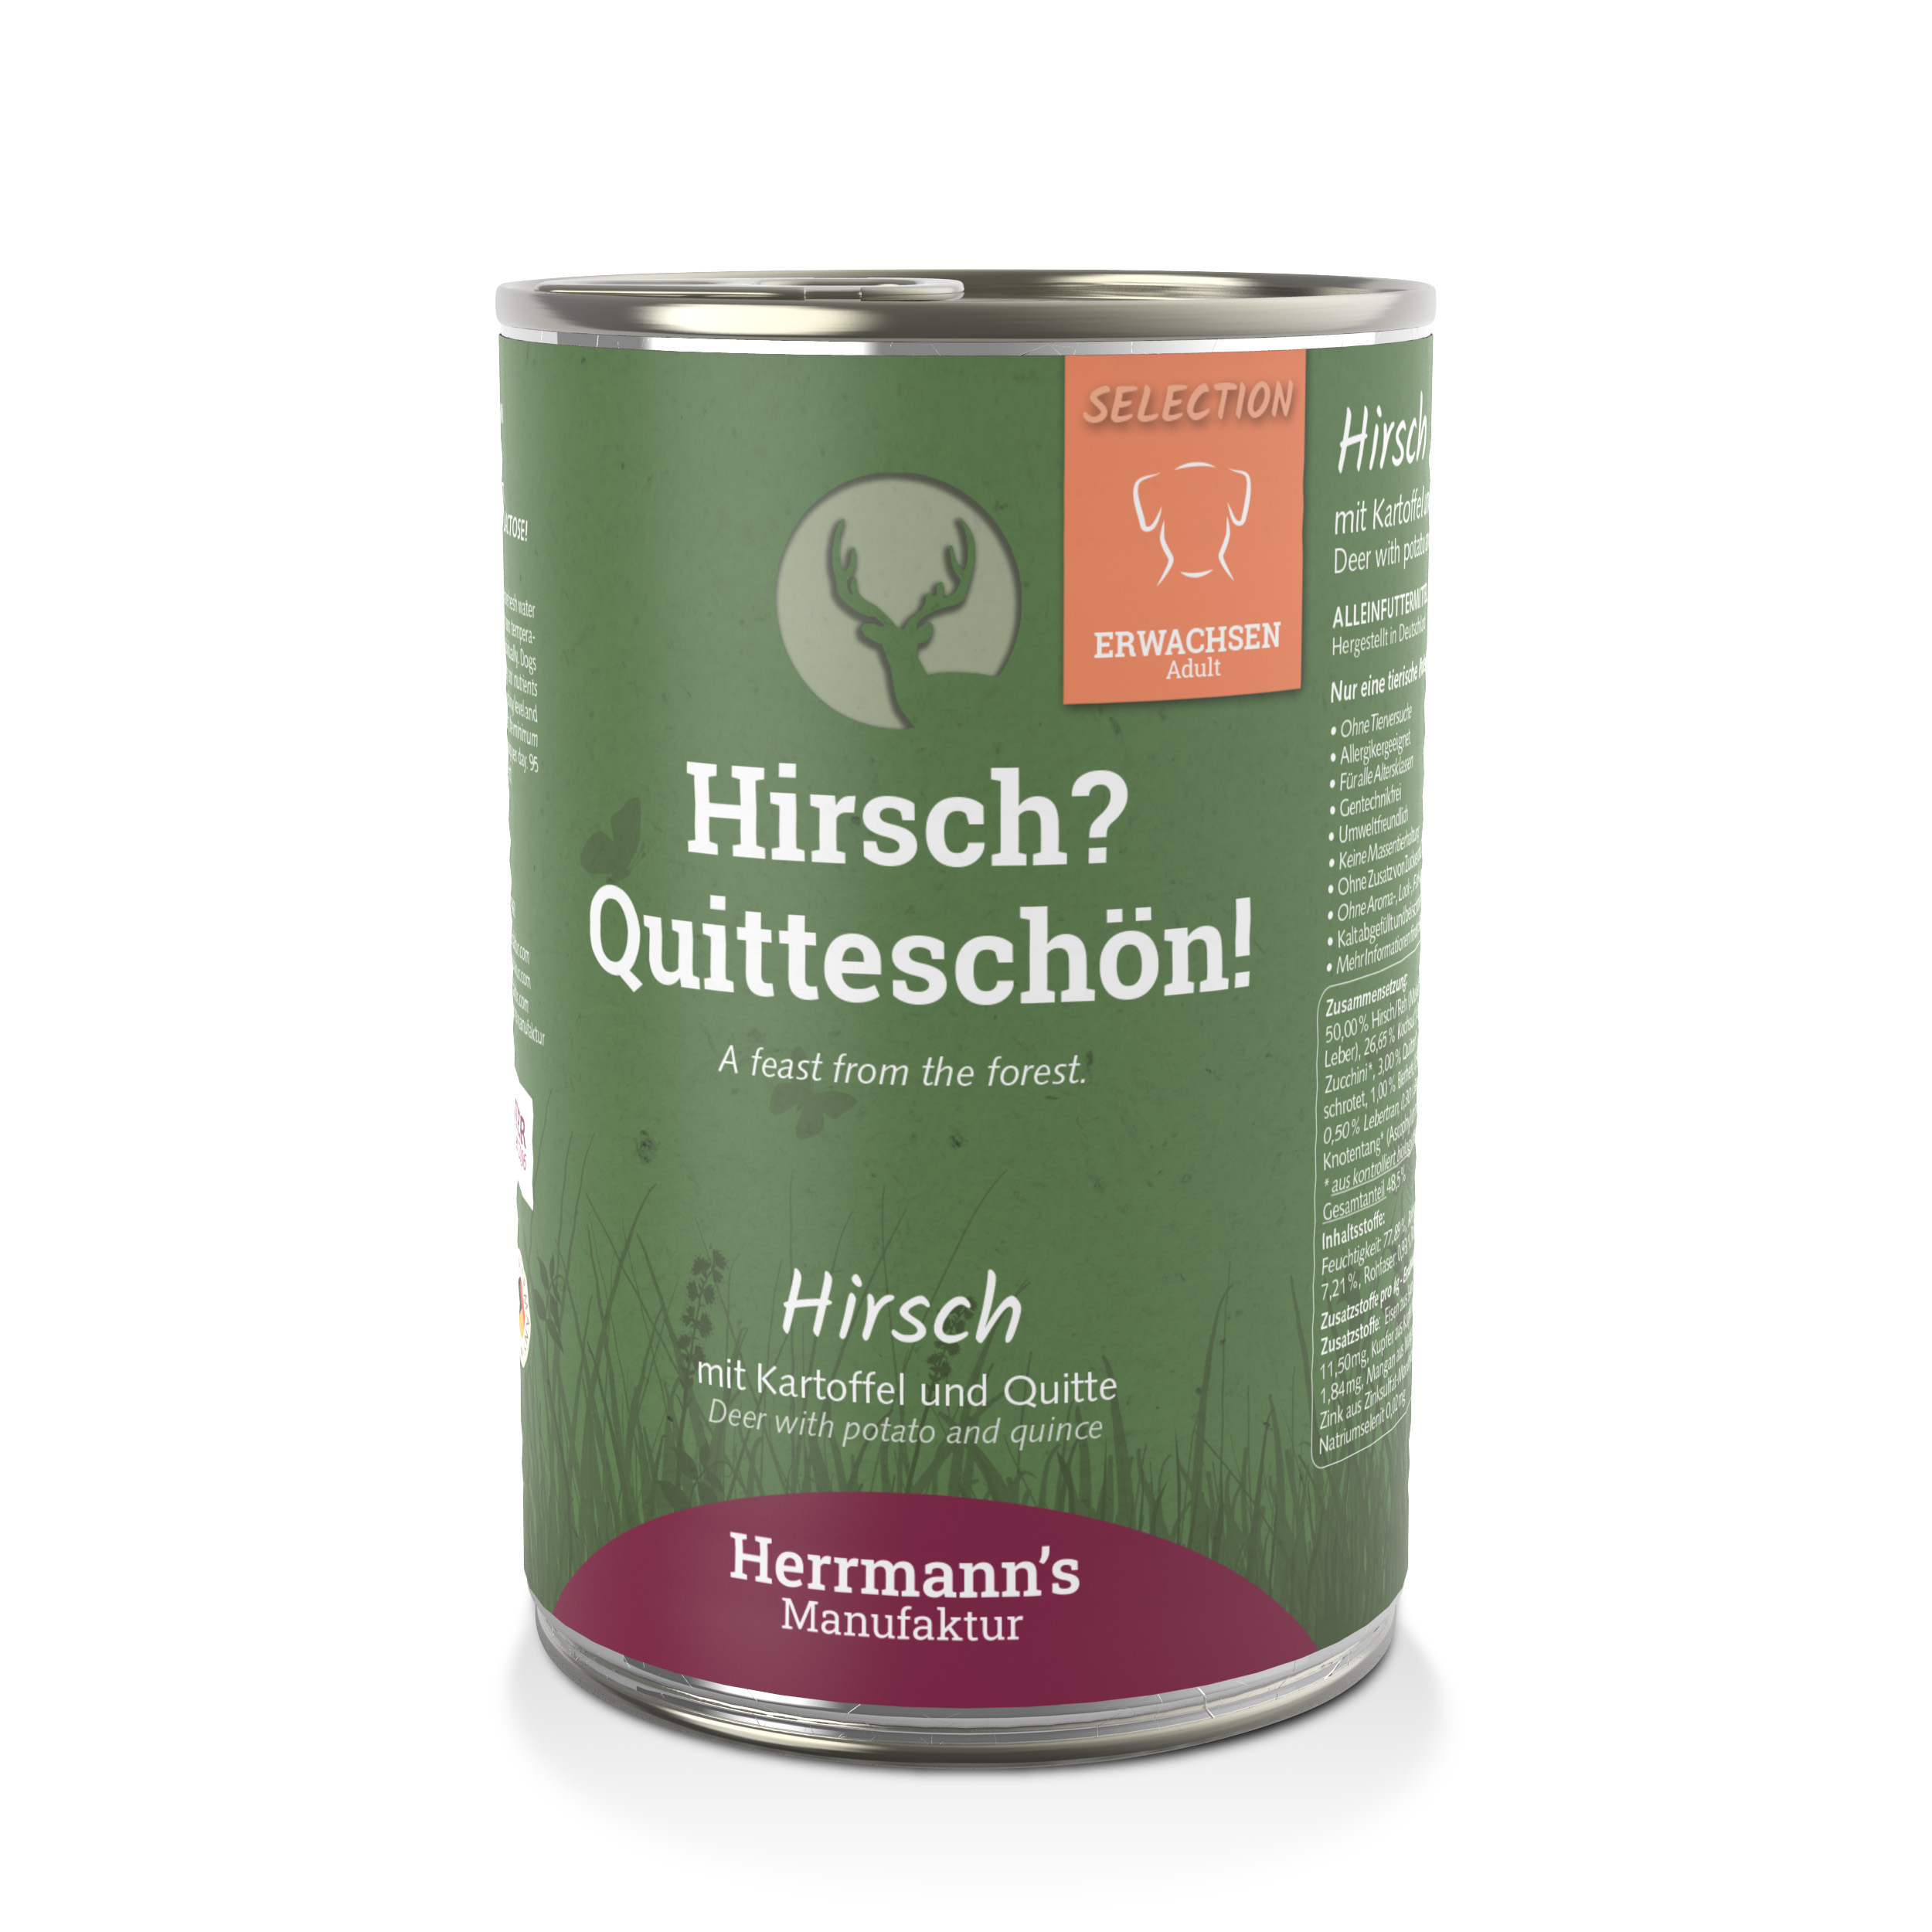 12er-VE Hundefutter Hirsch NICHT BIO mit Kartoffel und Quitte 400g Herrmann's - Bild 1